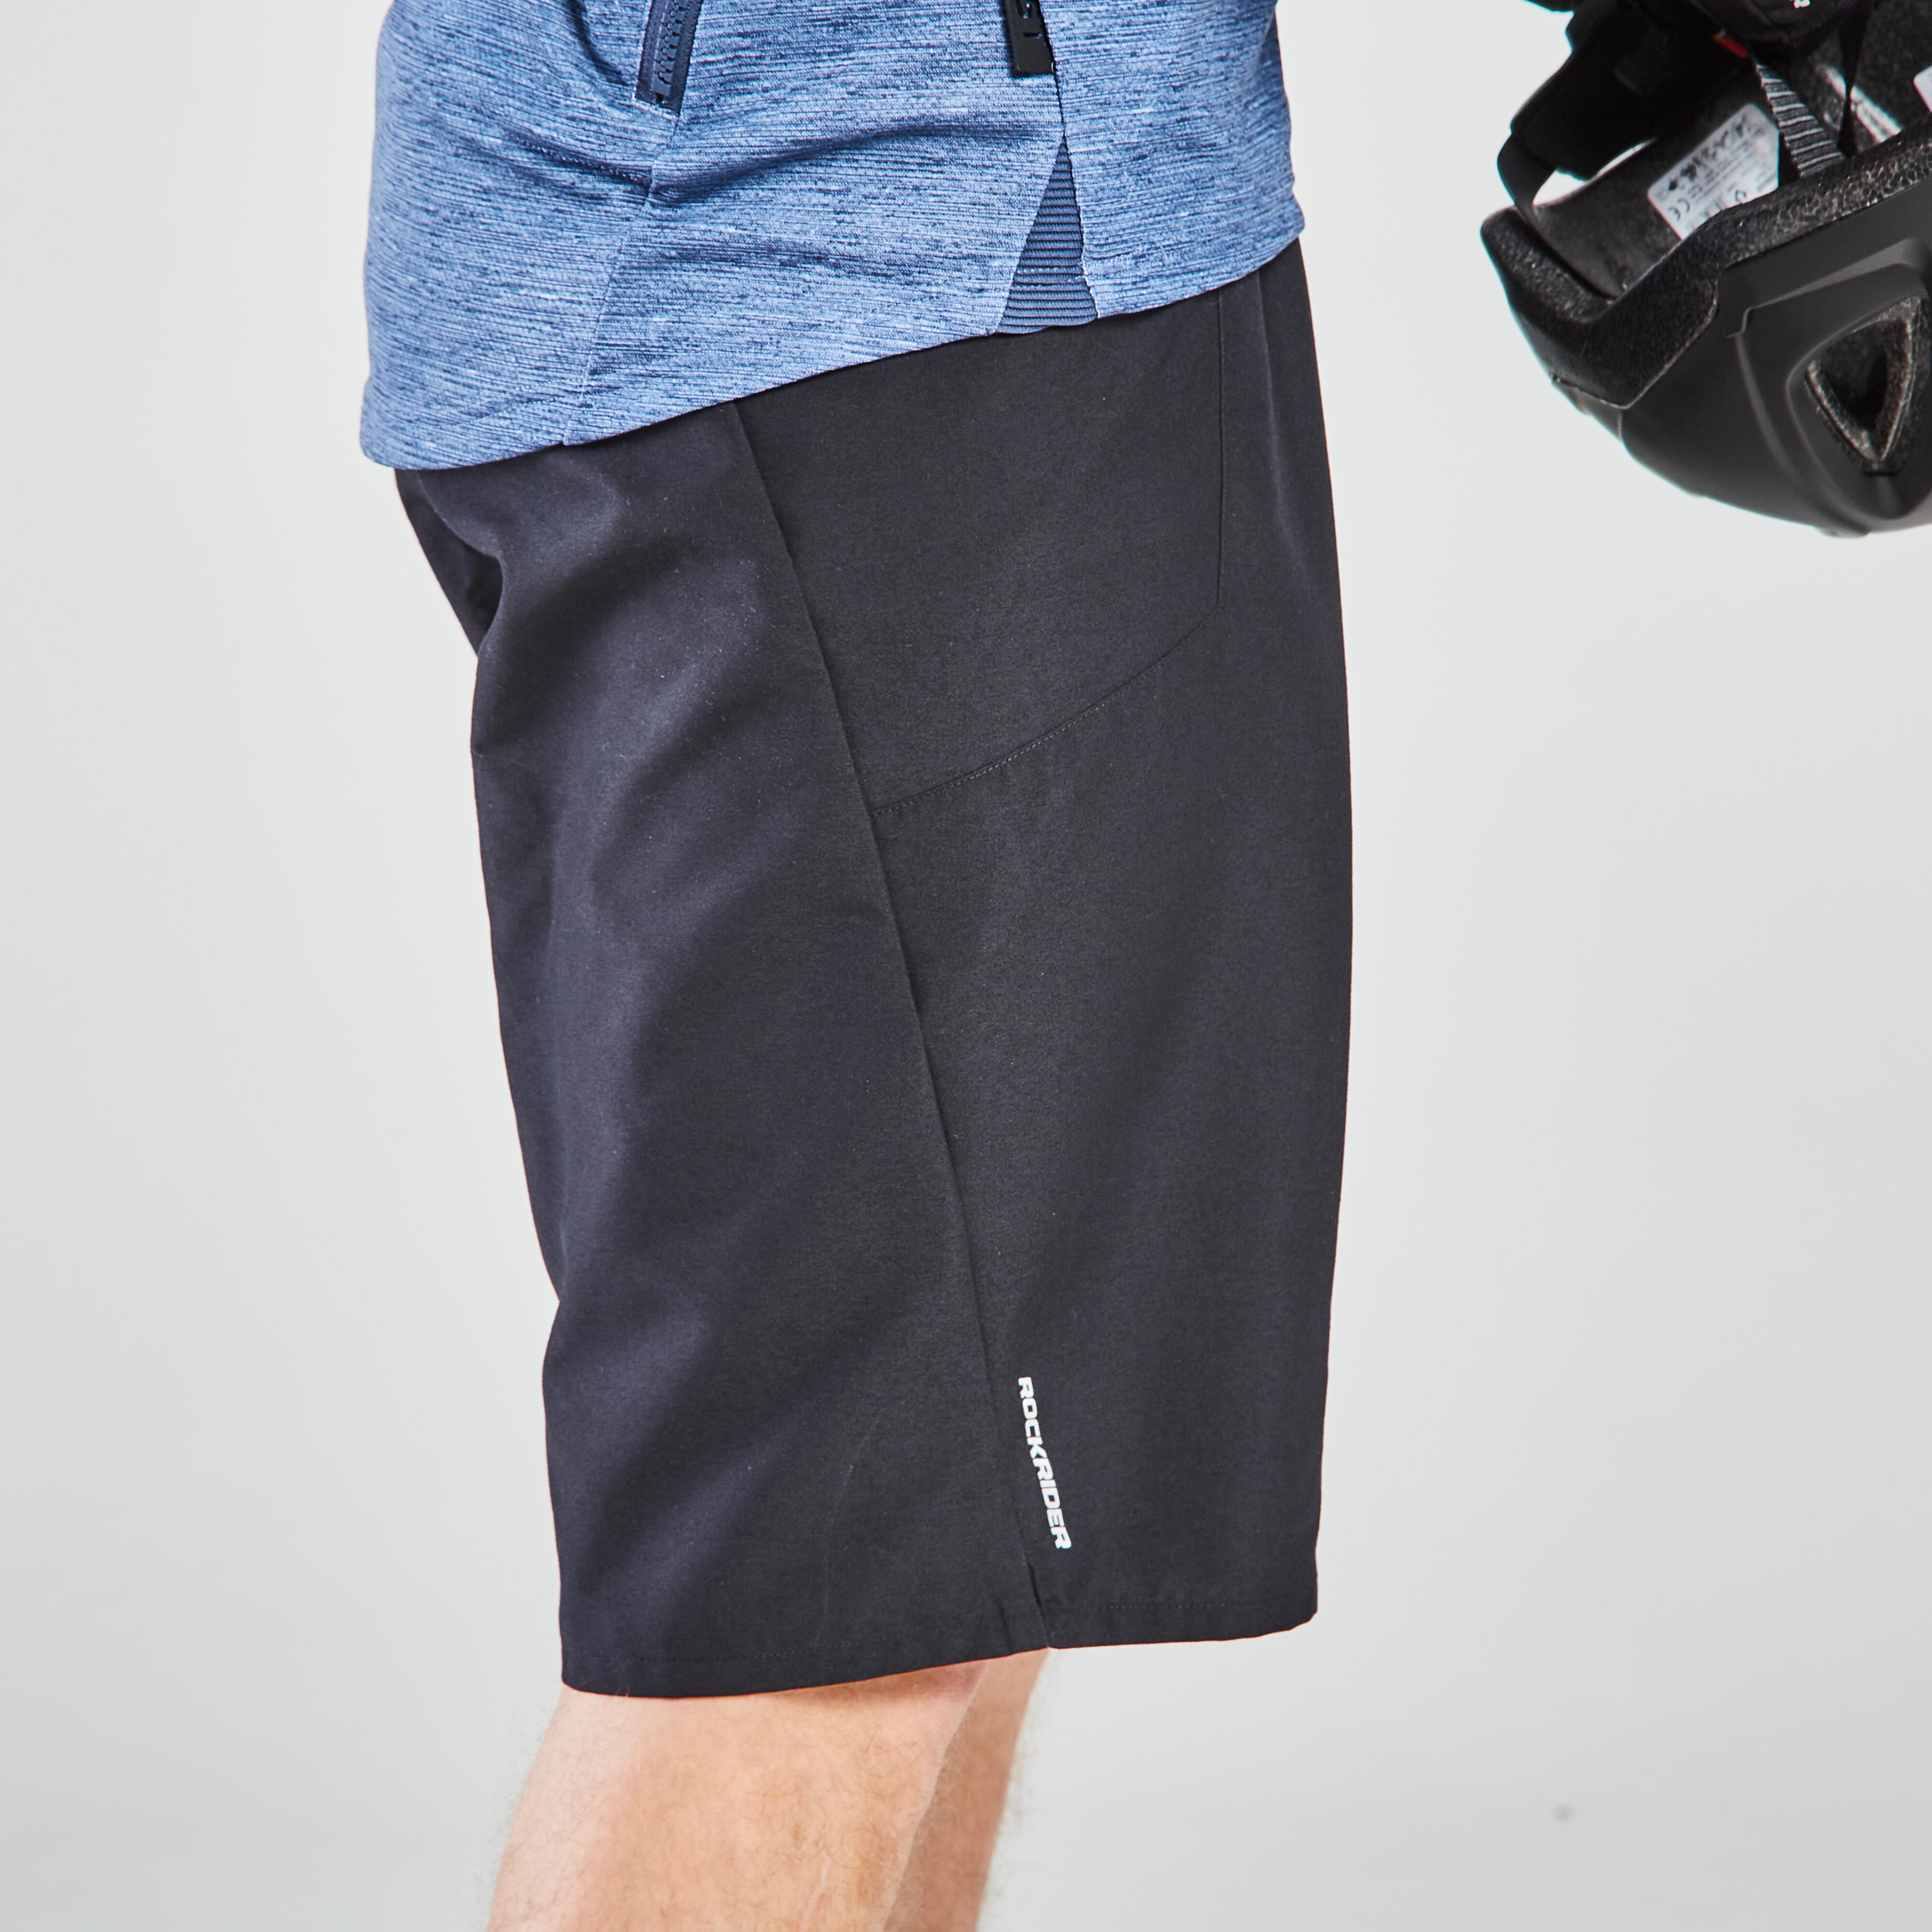 Men’s MTB Shorts - EXPL 100 Black - ROCKRIDER